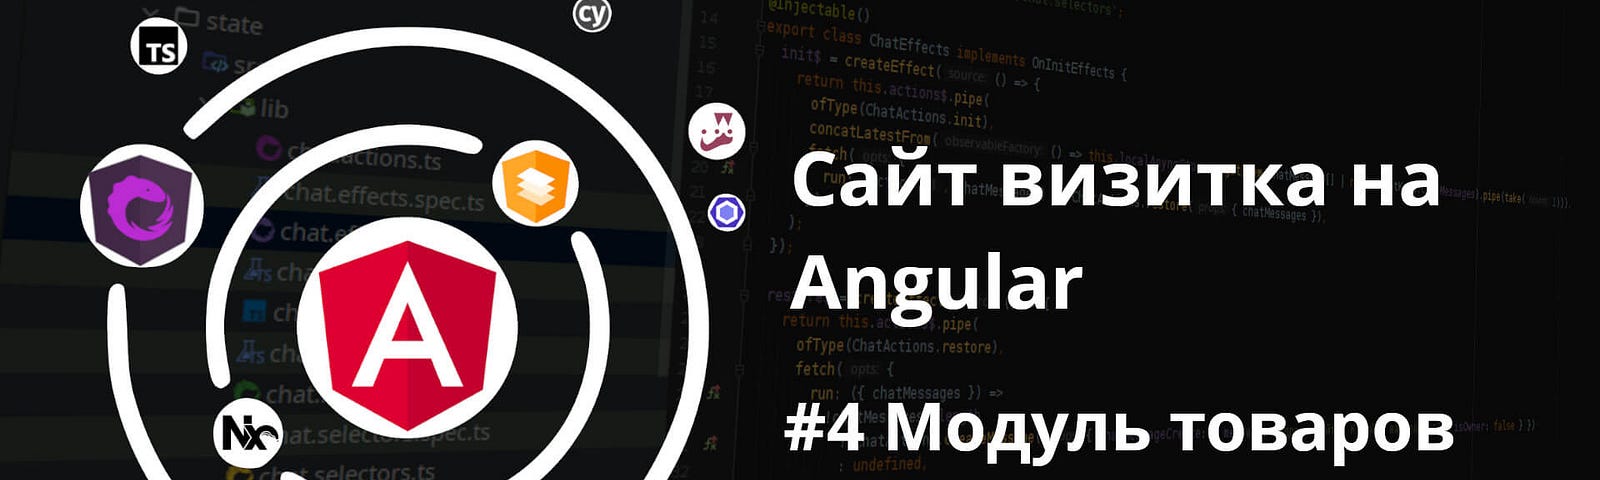 Сайт визитка на Angular. Модуль товаров